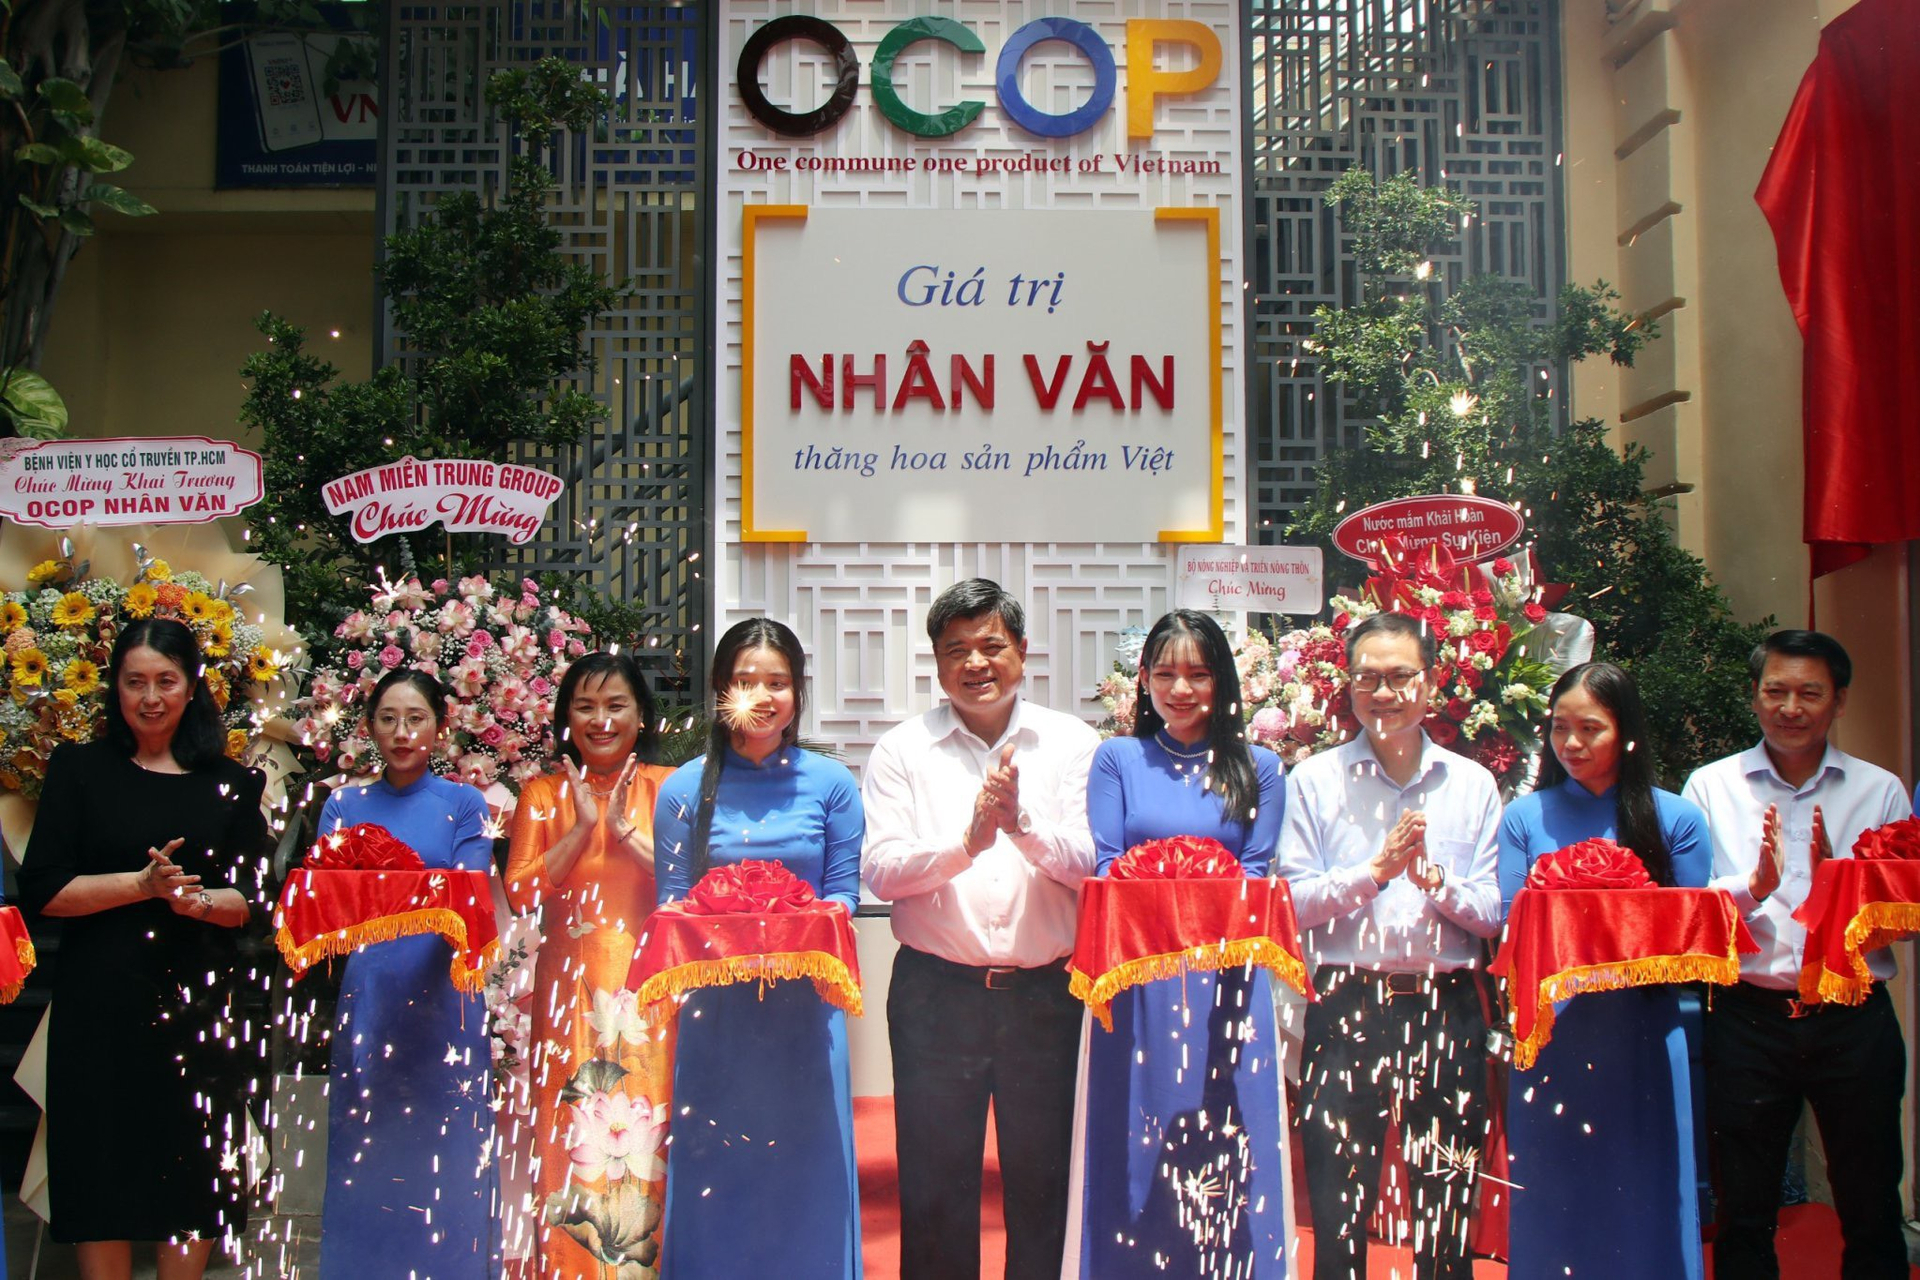 Trong khuôn khổ Diễn đàn, Thứ trưởng Bộ NN-PTNT Trần Thanh Nam cắt băng khai trương Không gian OCOP Nhân văn.